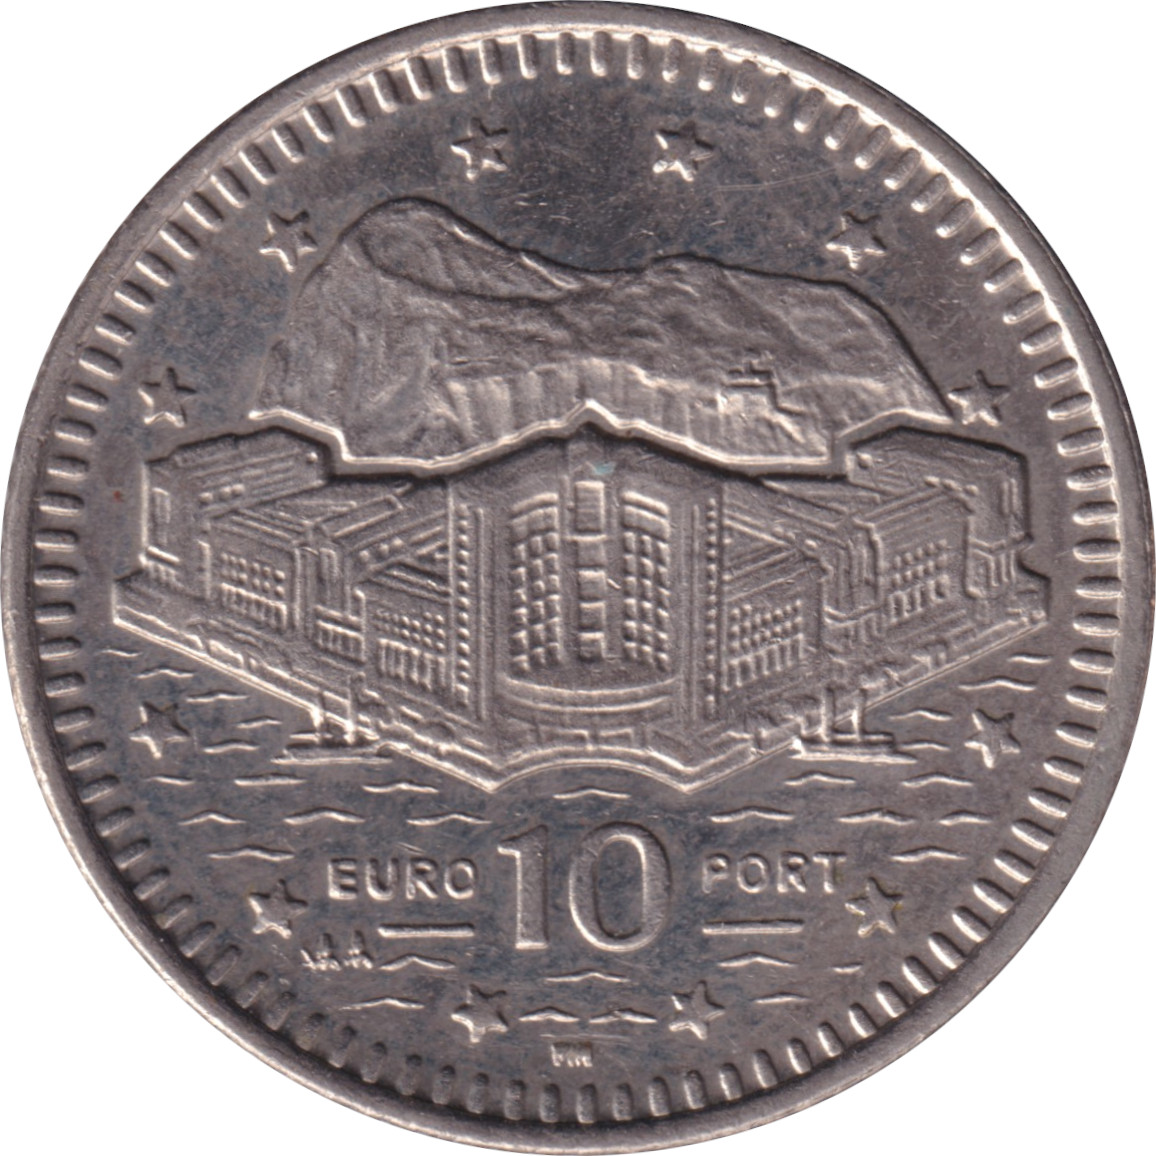 10 pence - Elizabeth II - Tête agée